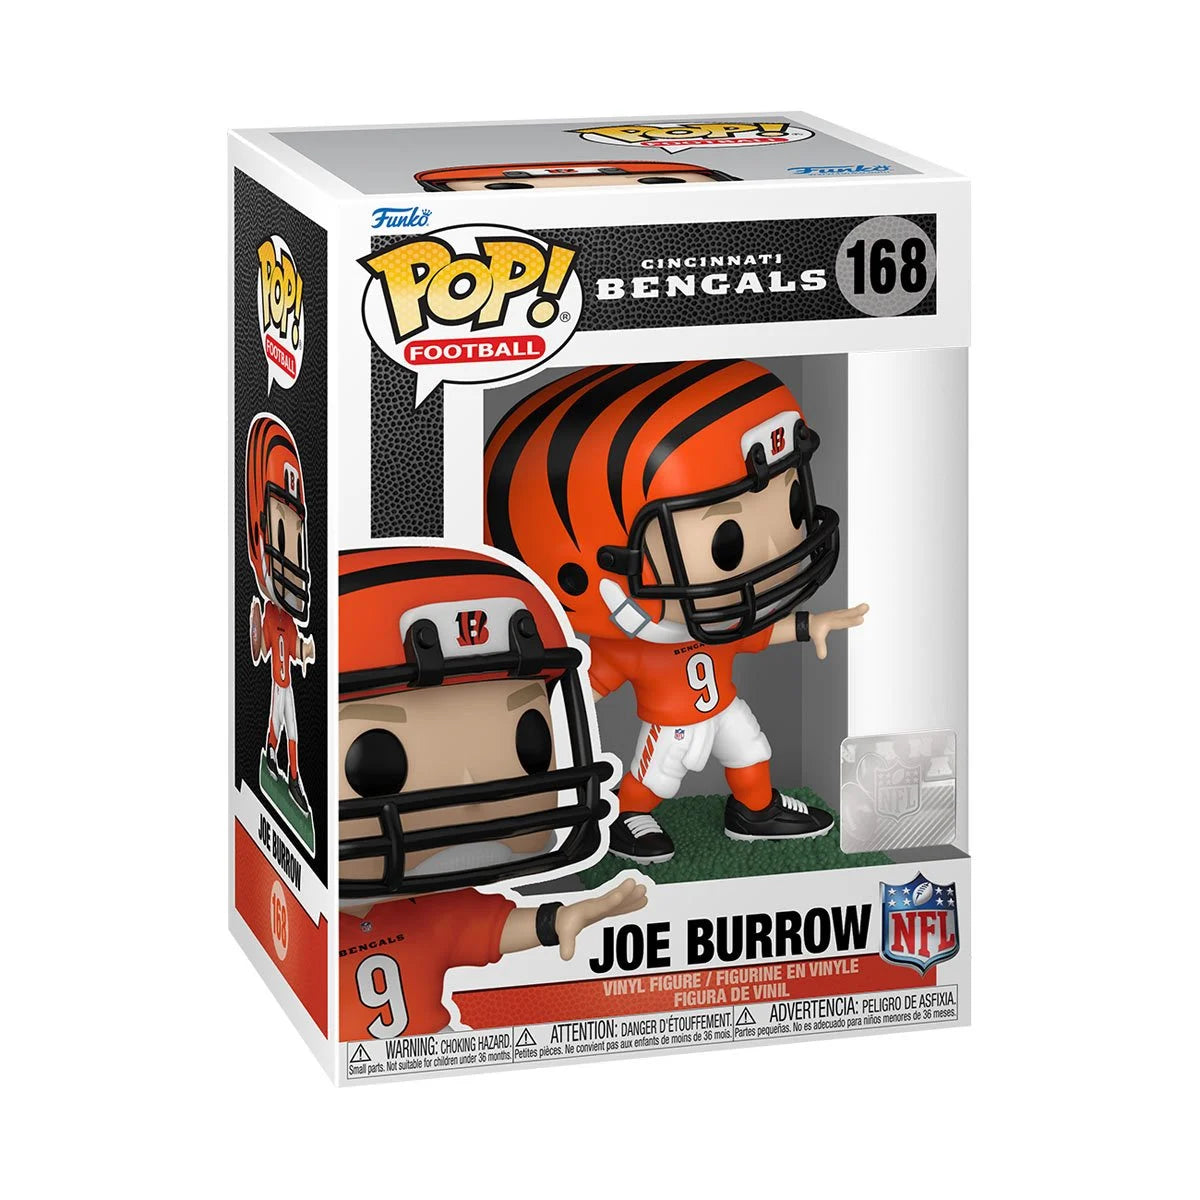 Joe Burrow NFL Cincinnati Bengals Pop! Vinyl Figure